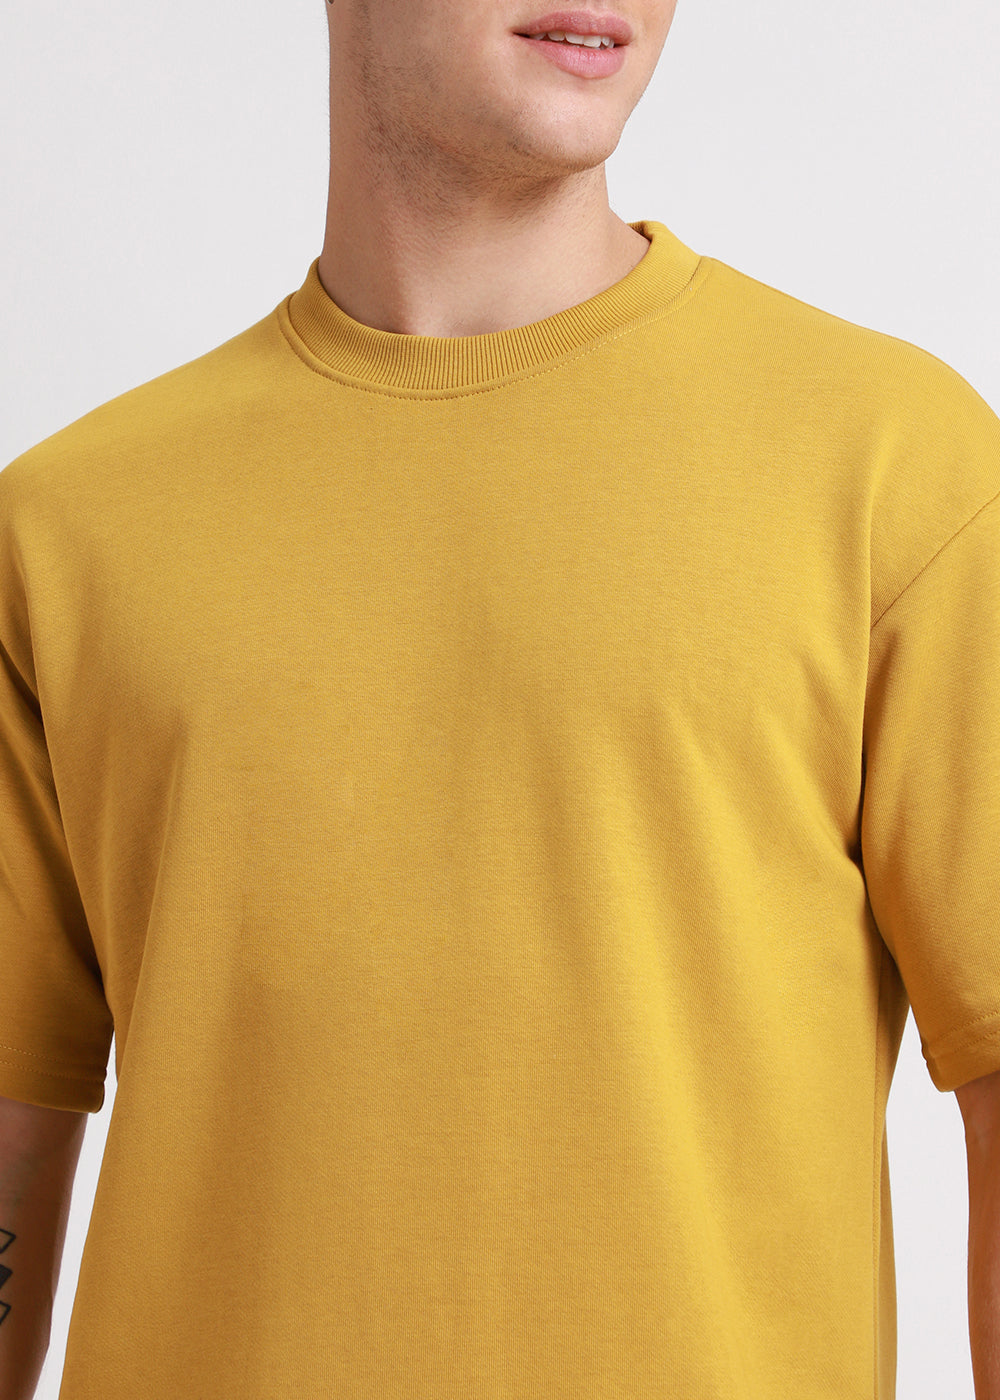 Canary Yellow Oversized Basic T-shirt